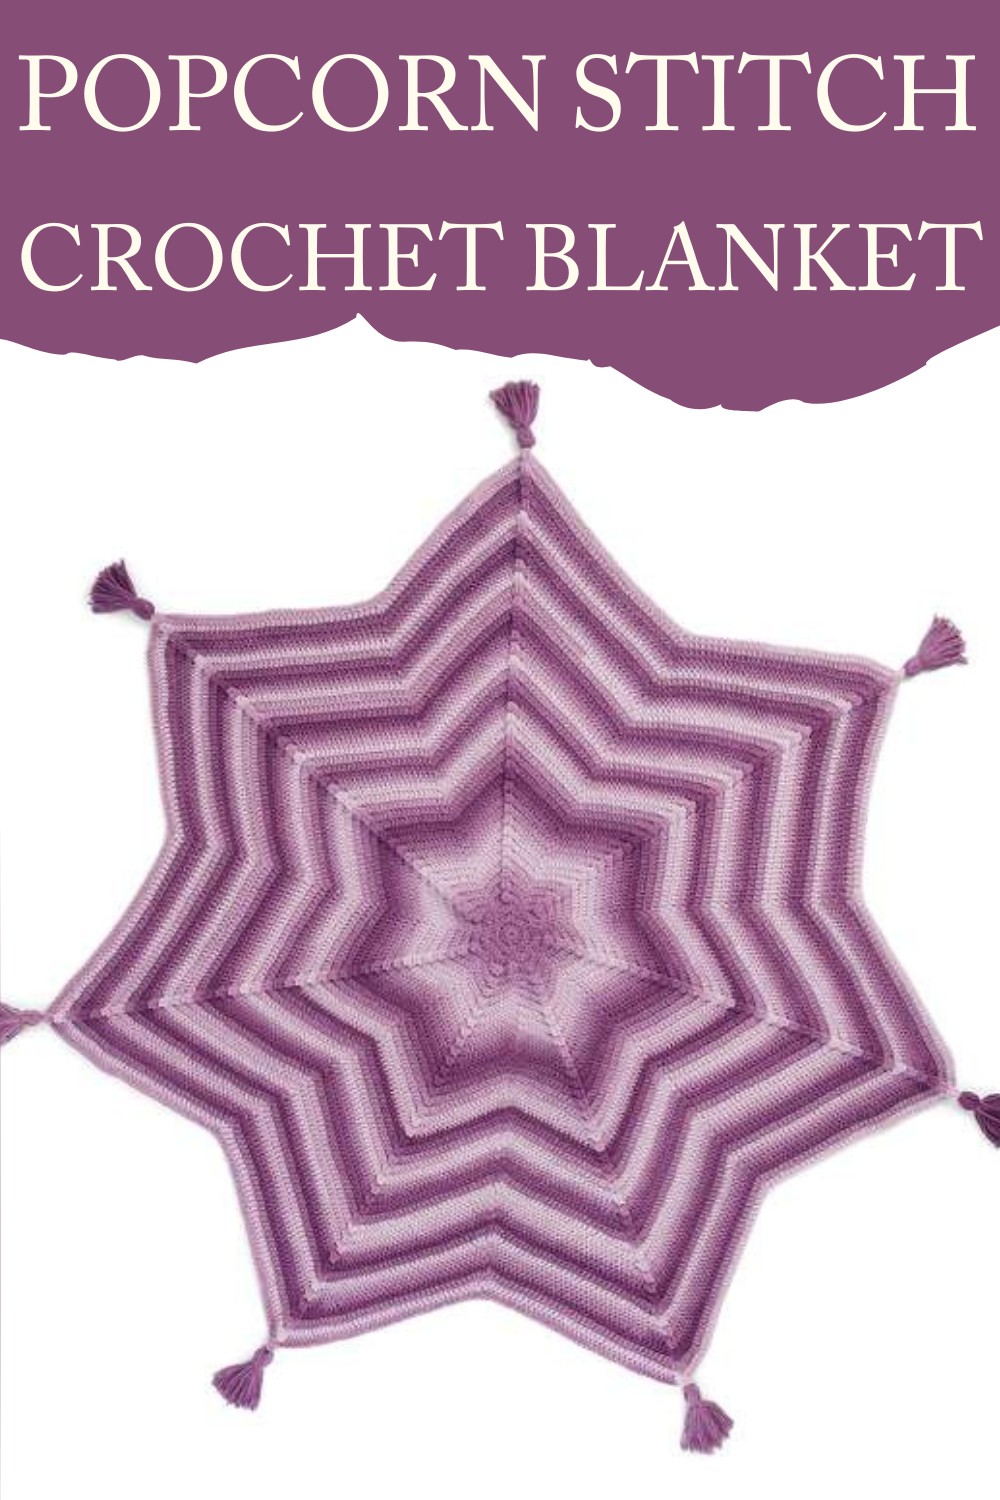 Popcorn Stitch Crochet Blanket